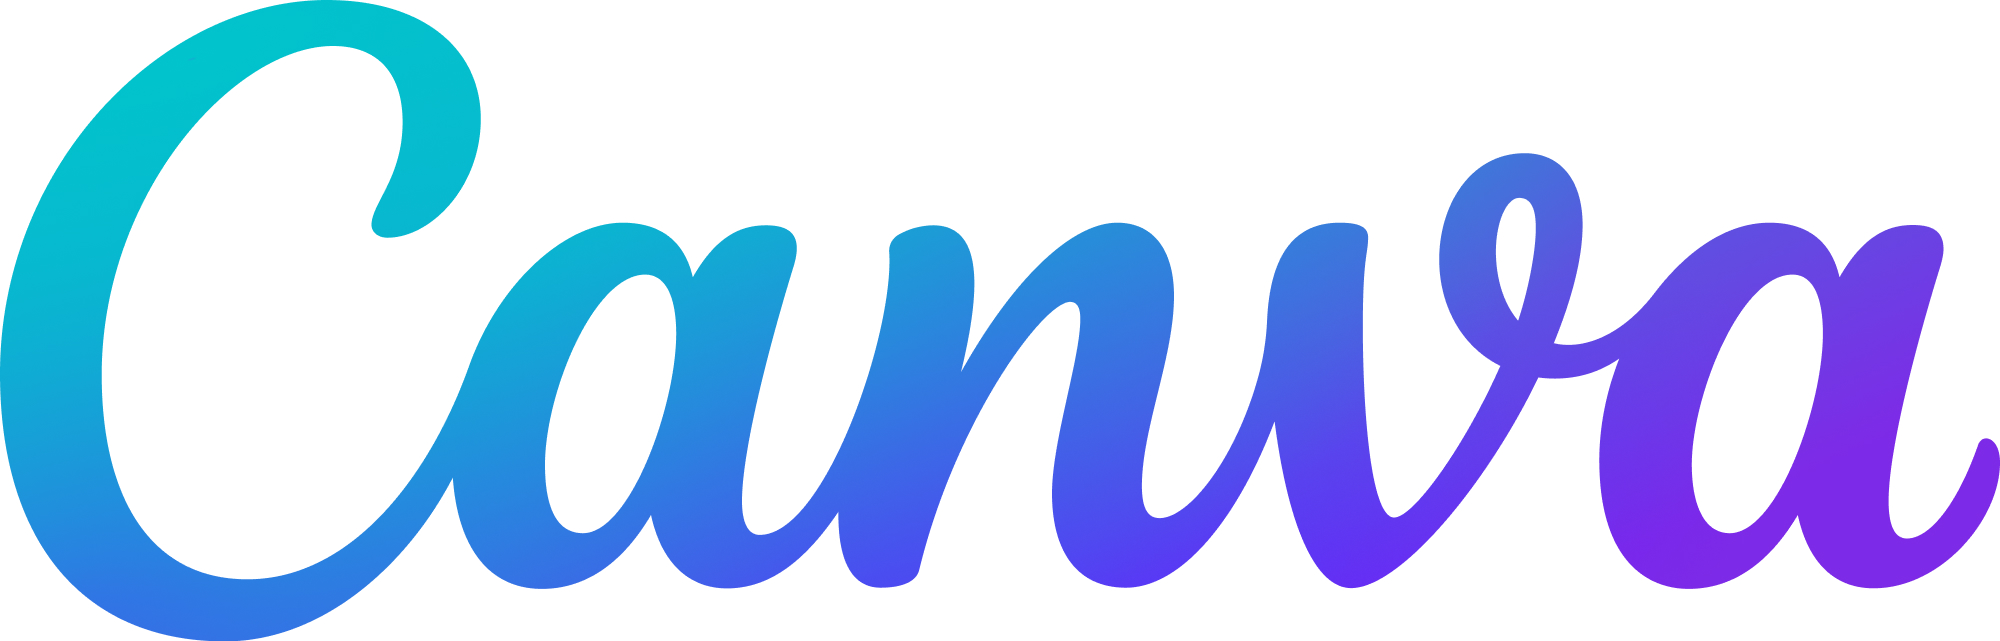 Canva logo. Sininen teksti jossa lukee Canva.